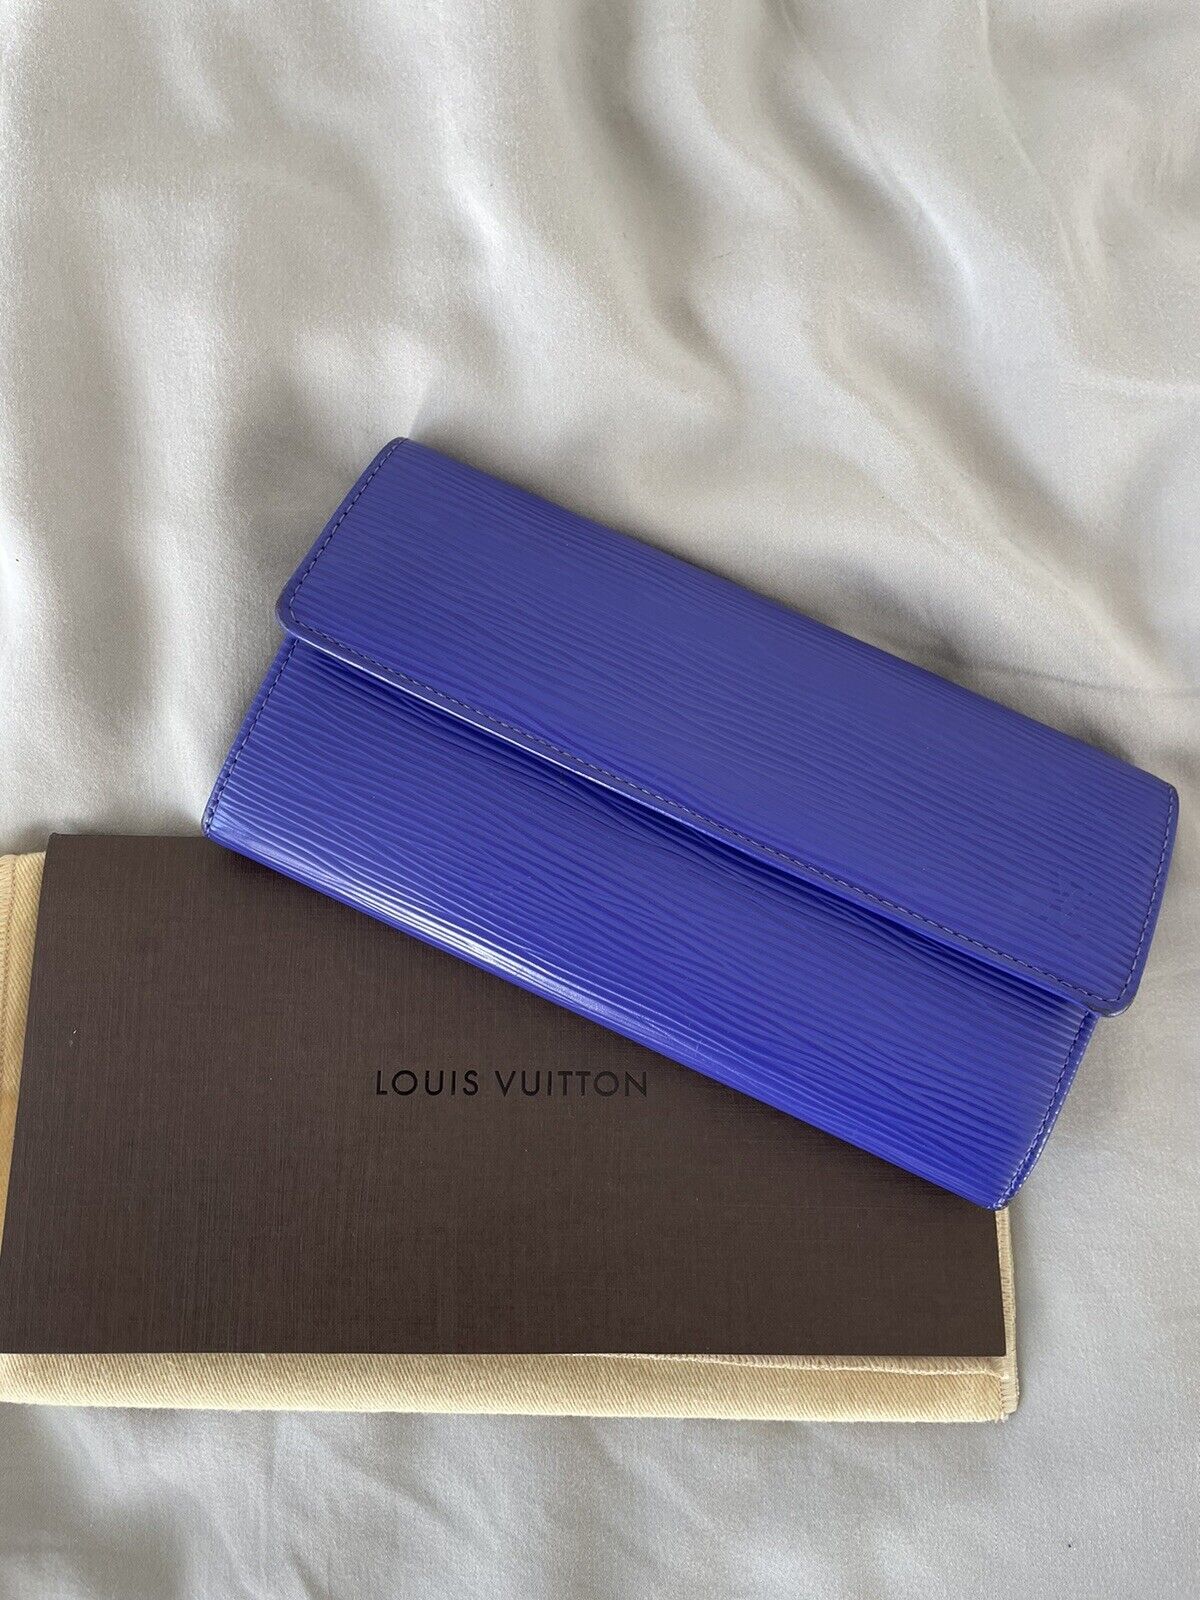 Louis Vuitton wallet - Rare Color - image 7